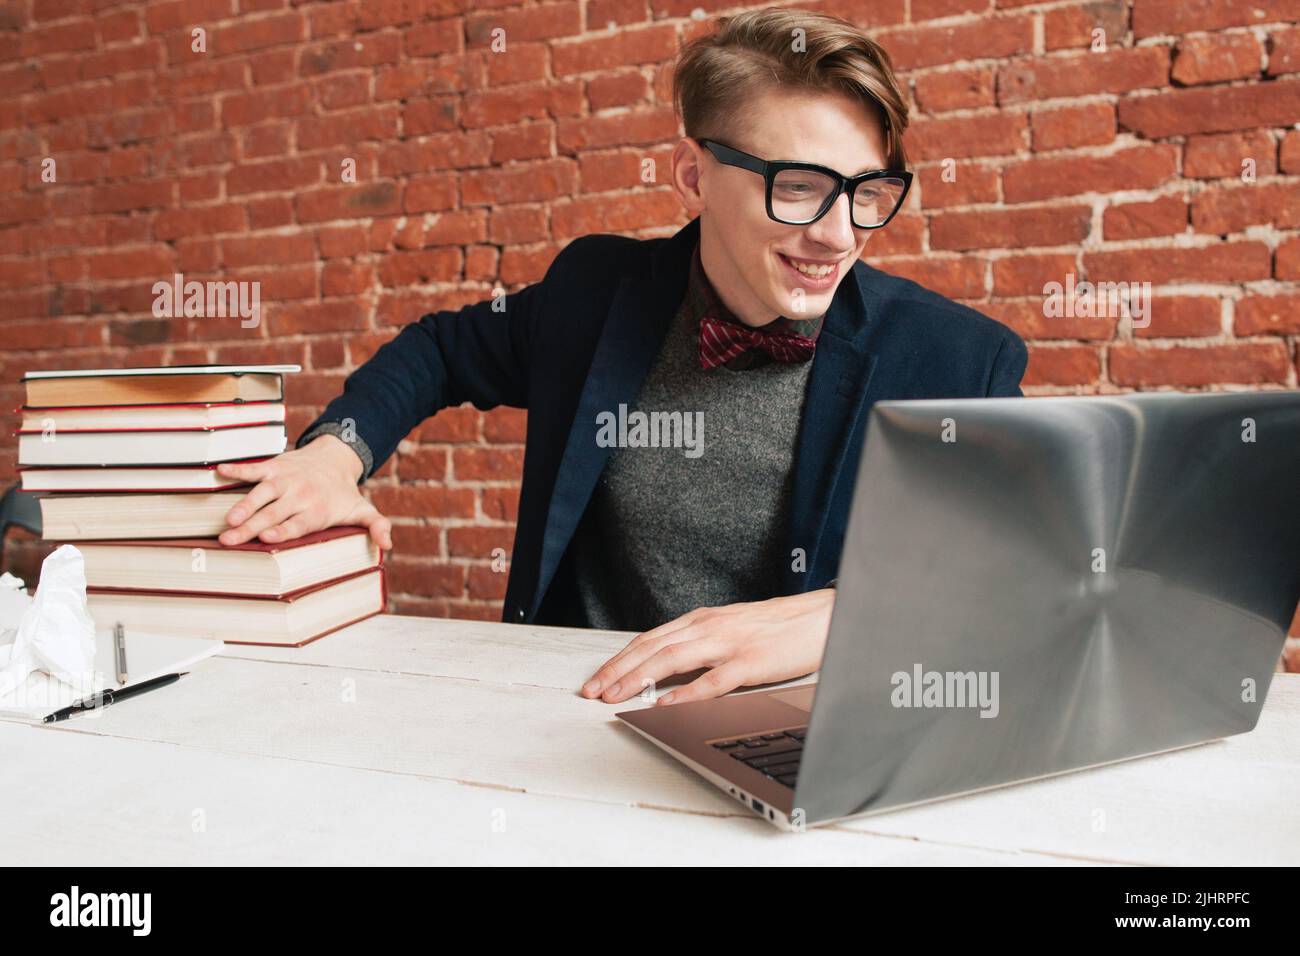 Homme souriant avec ordinateur portable, éloignez-vous d'une pile de livres Banque D'Images